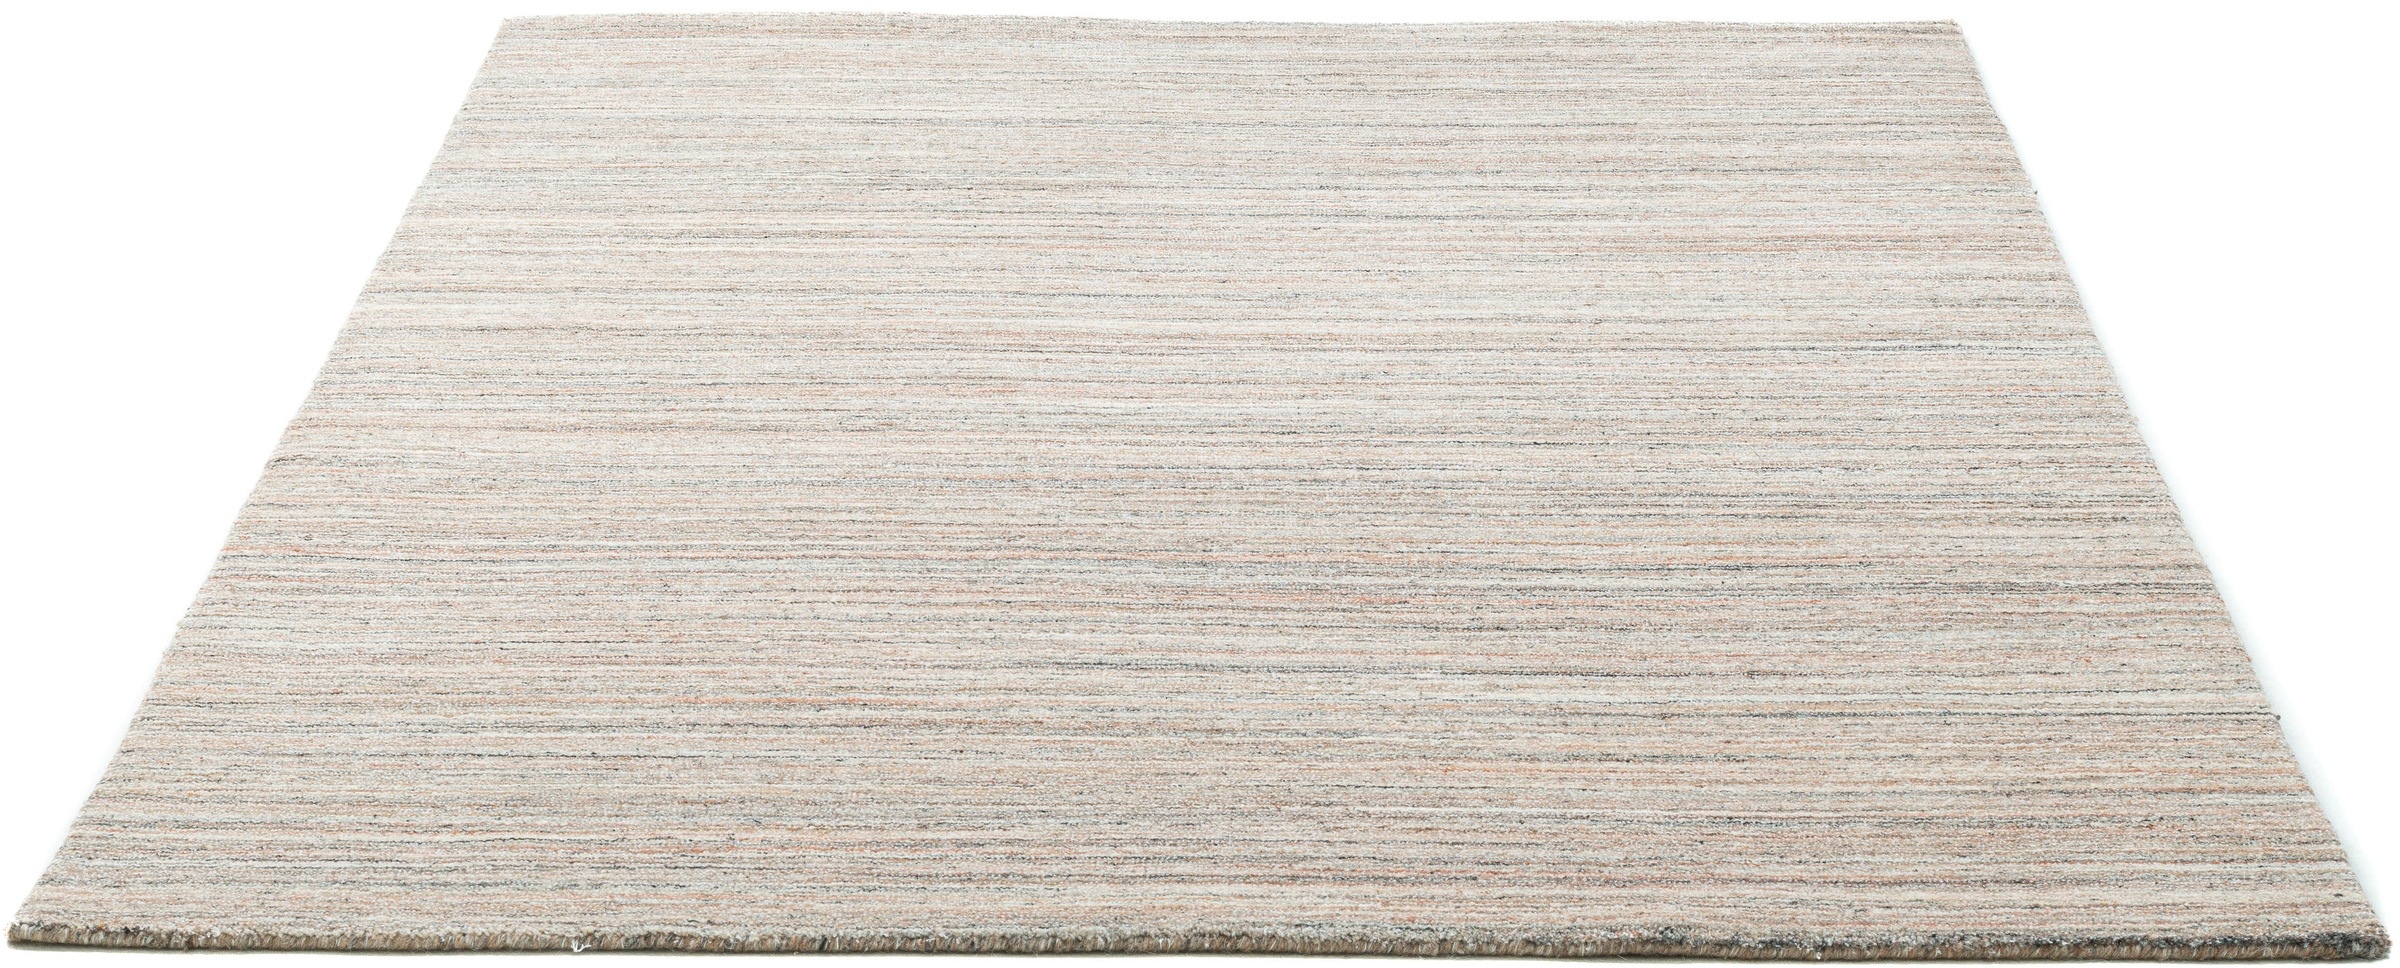 THEKO Teppich »San Diego«, rechteckig, handgewebt, 60% Wolle, Knüpfoptik, meliert, leichter seidiger Glanz